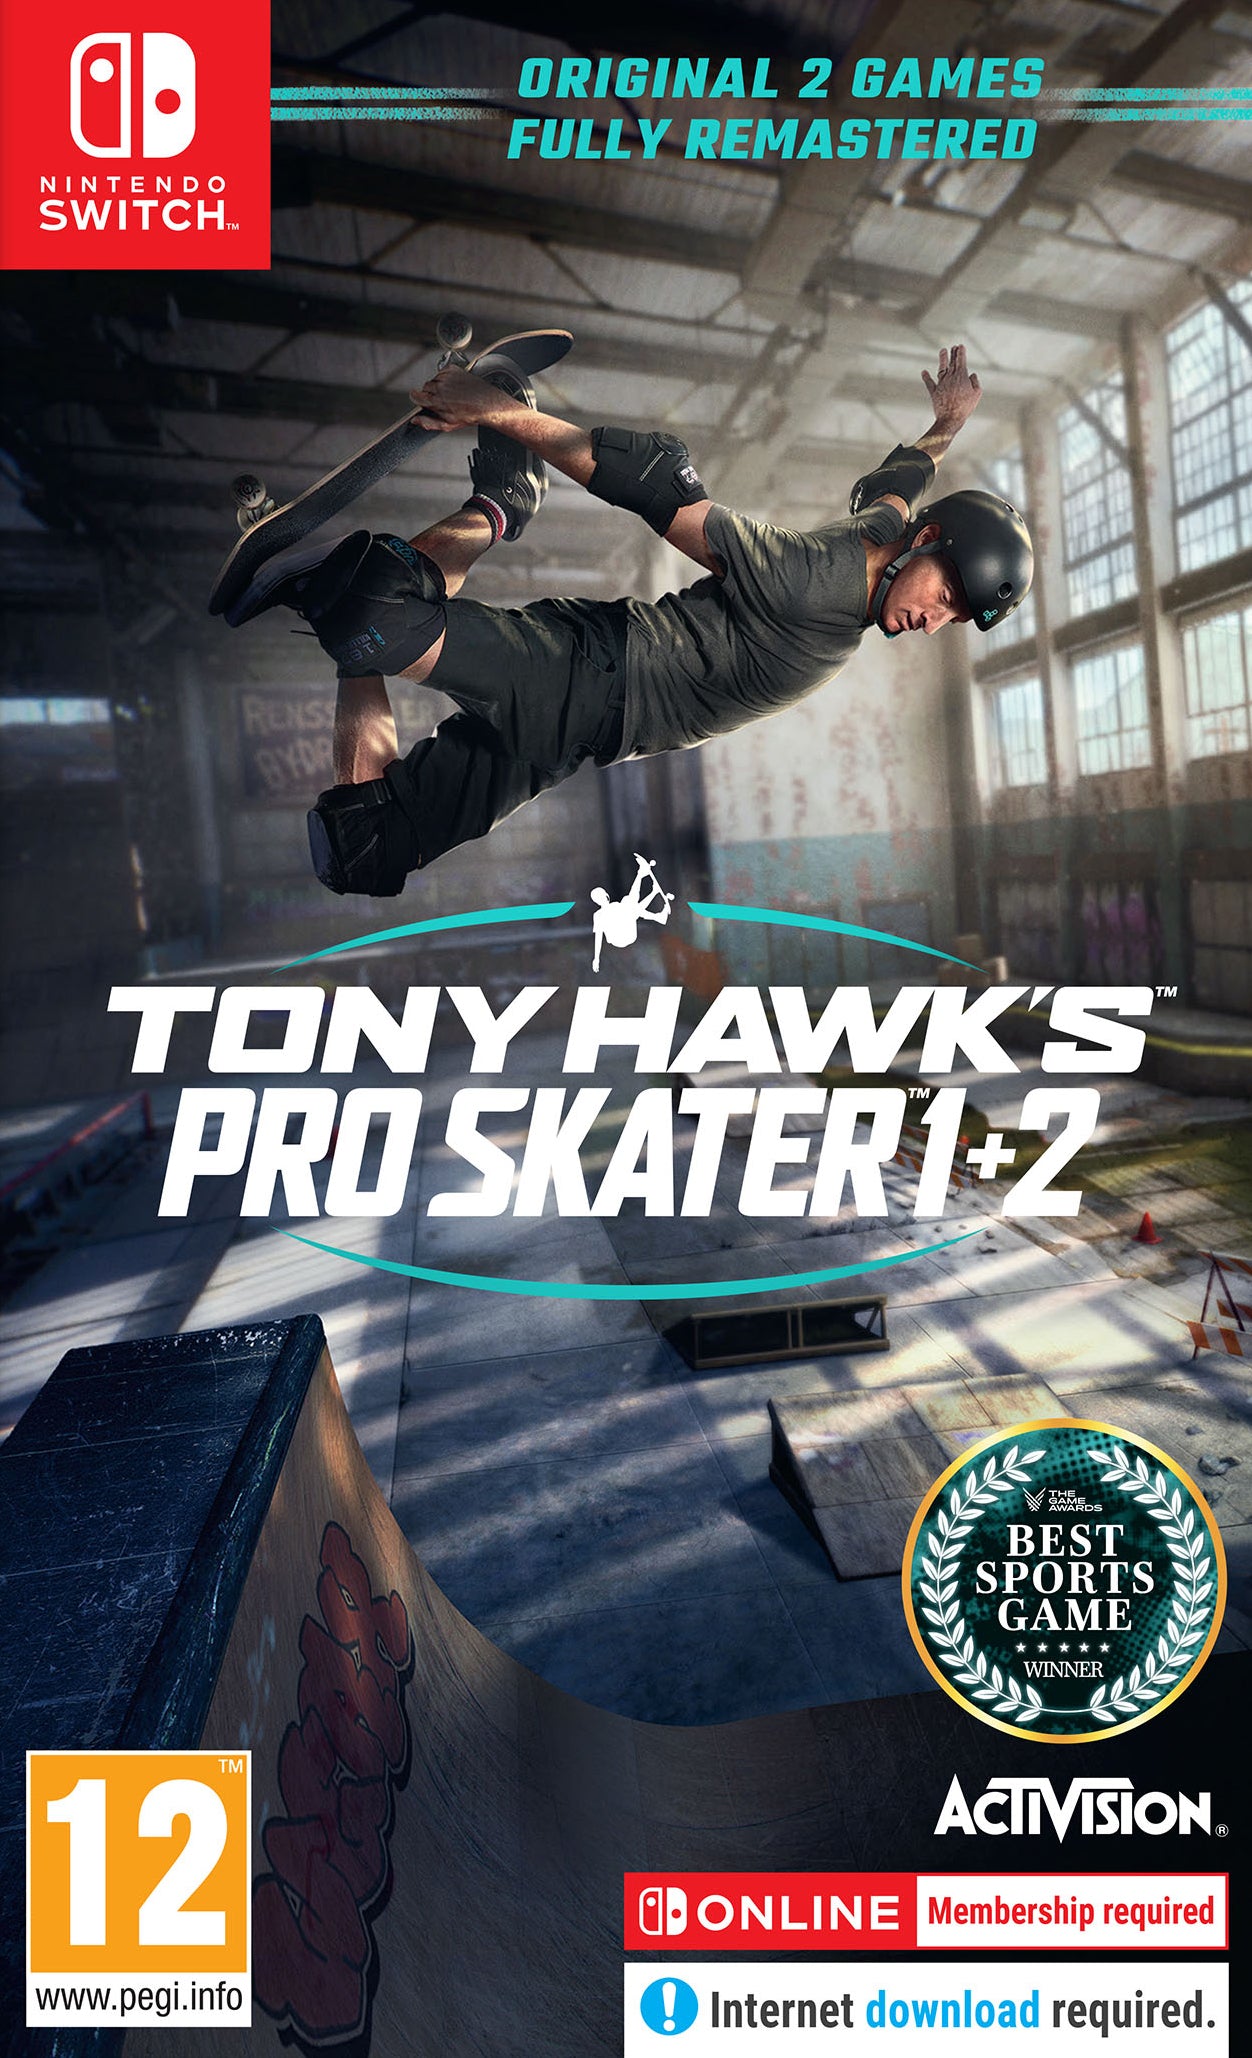 Tony Hawk Pro Skater 1&2